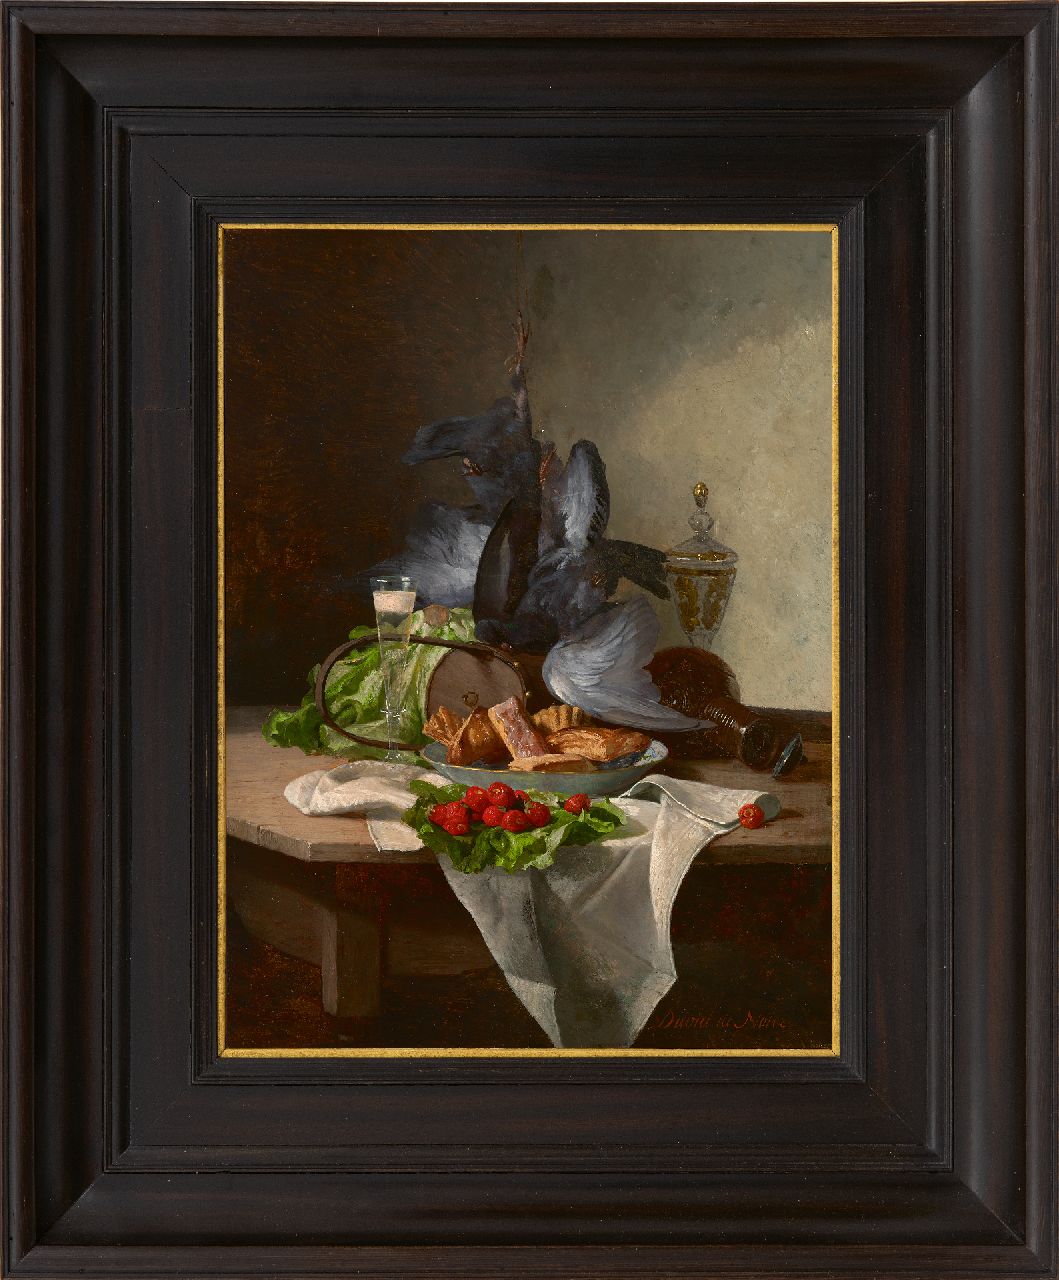 Noter D.E.J. de | 'David' Emile Joseph de Noter | Schilderijen te koop aangeboden | Stilleven met groente, pastei en wild, olieverf op paneel 30,4 x 22,8 cm, gesigneerd rechtsonder